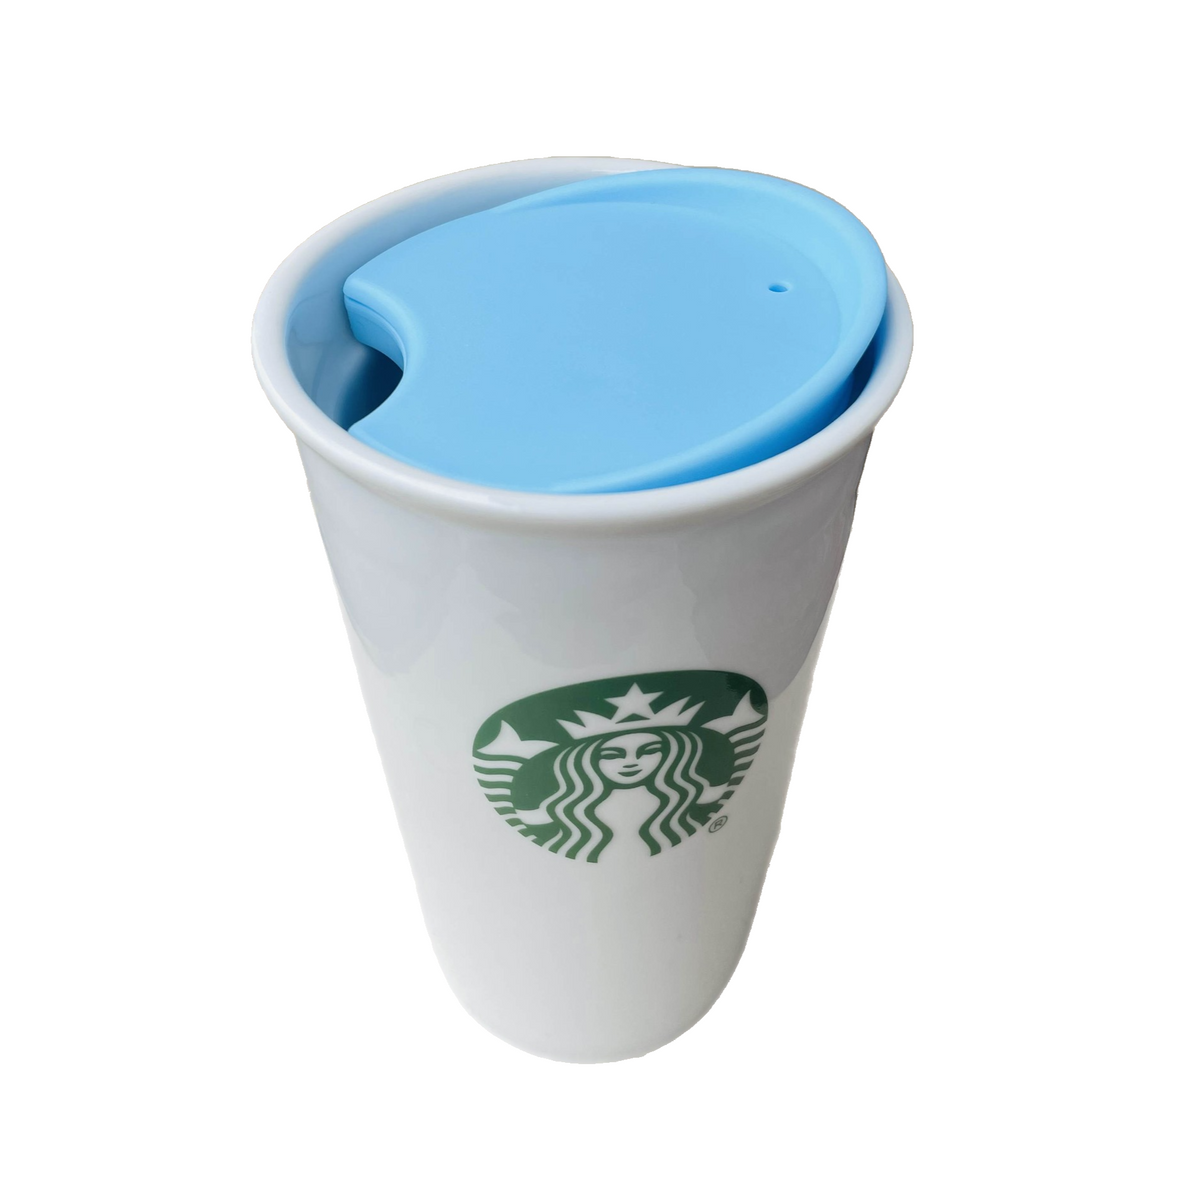 Slide Boston Blue Replacement Lid for Starbucks Ceramic Travel